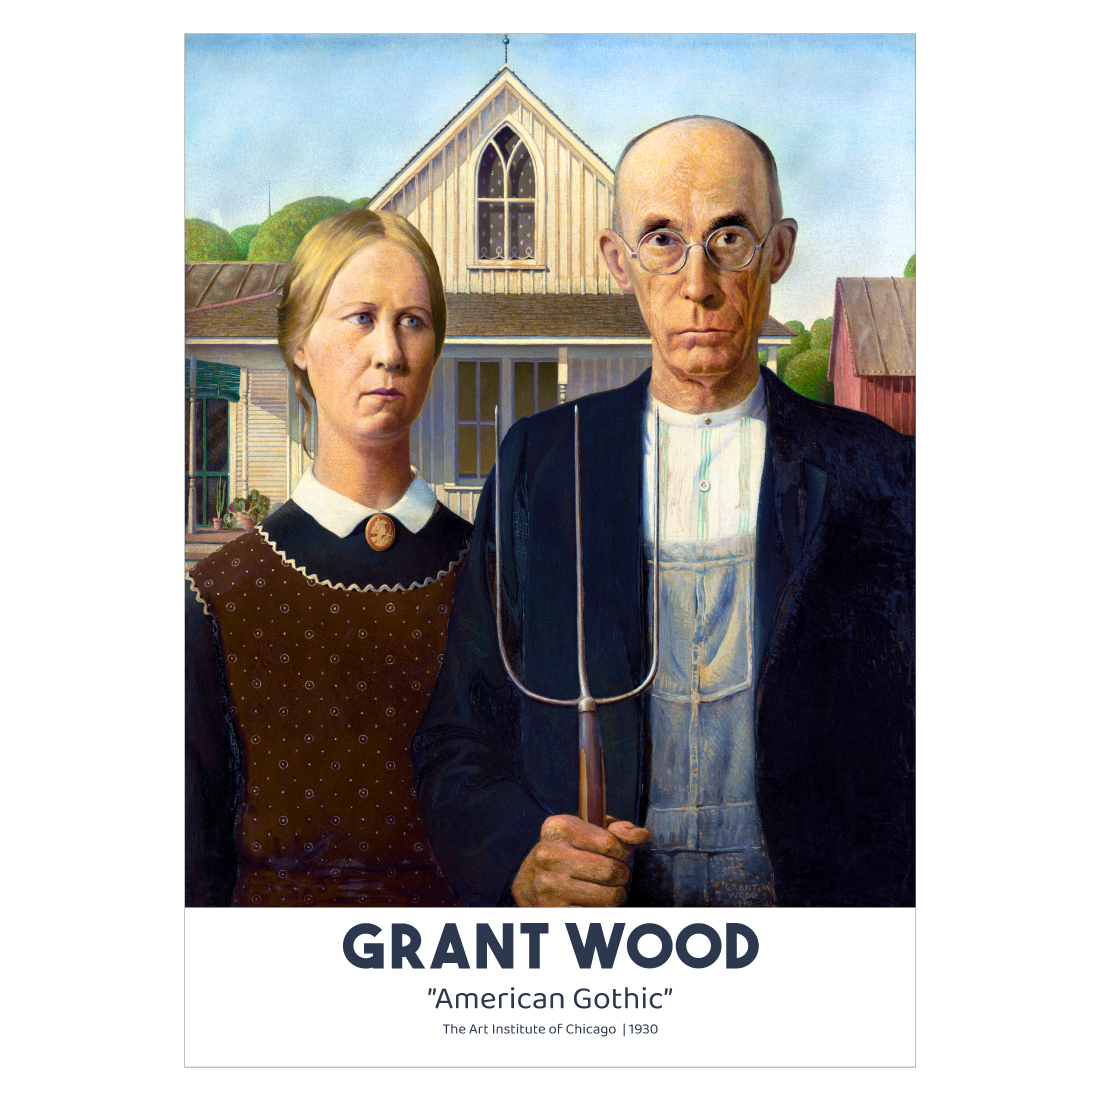 Kunstplakat med Grant Wood "American Gothic"